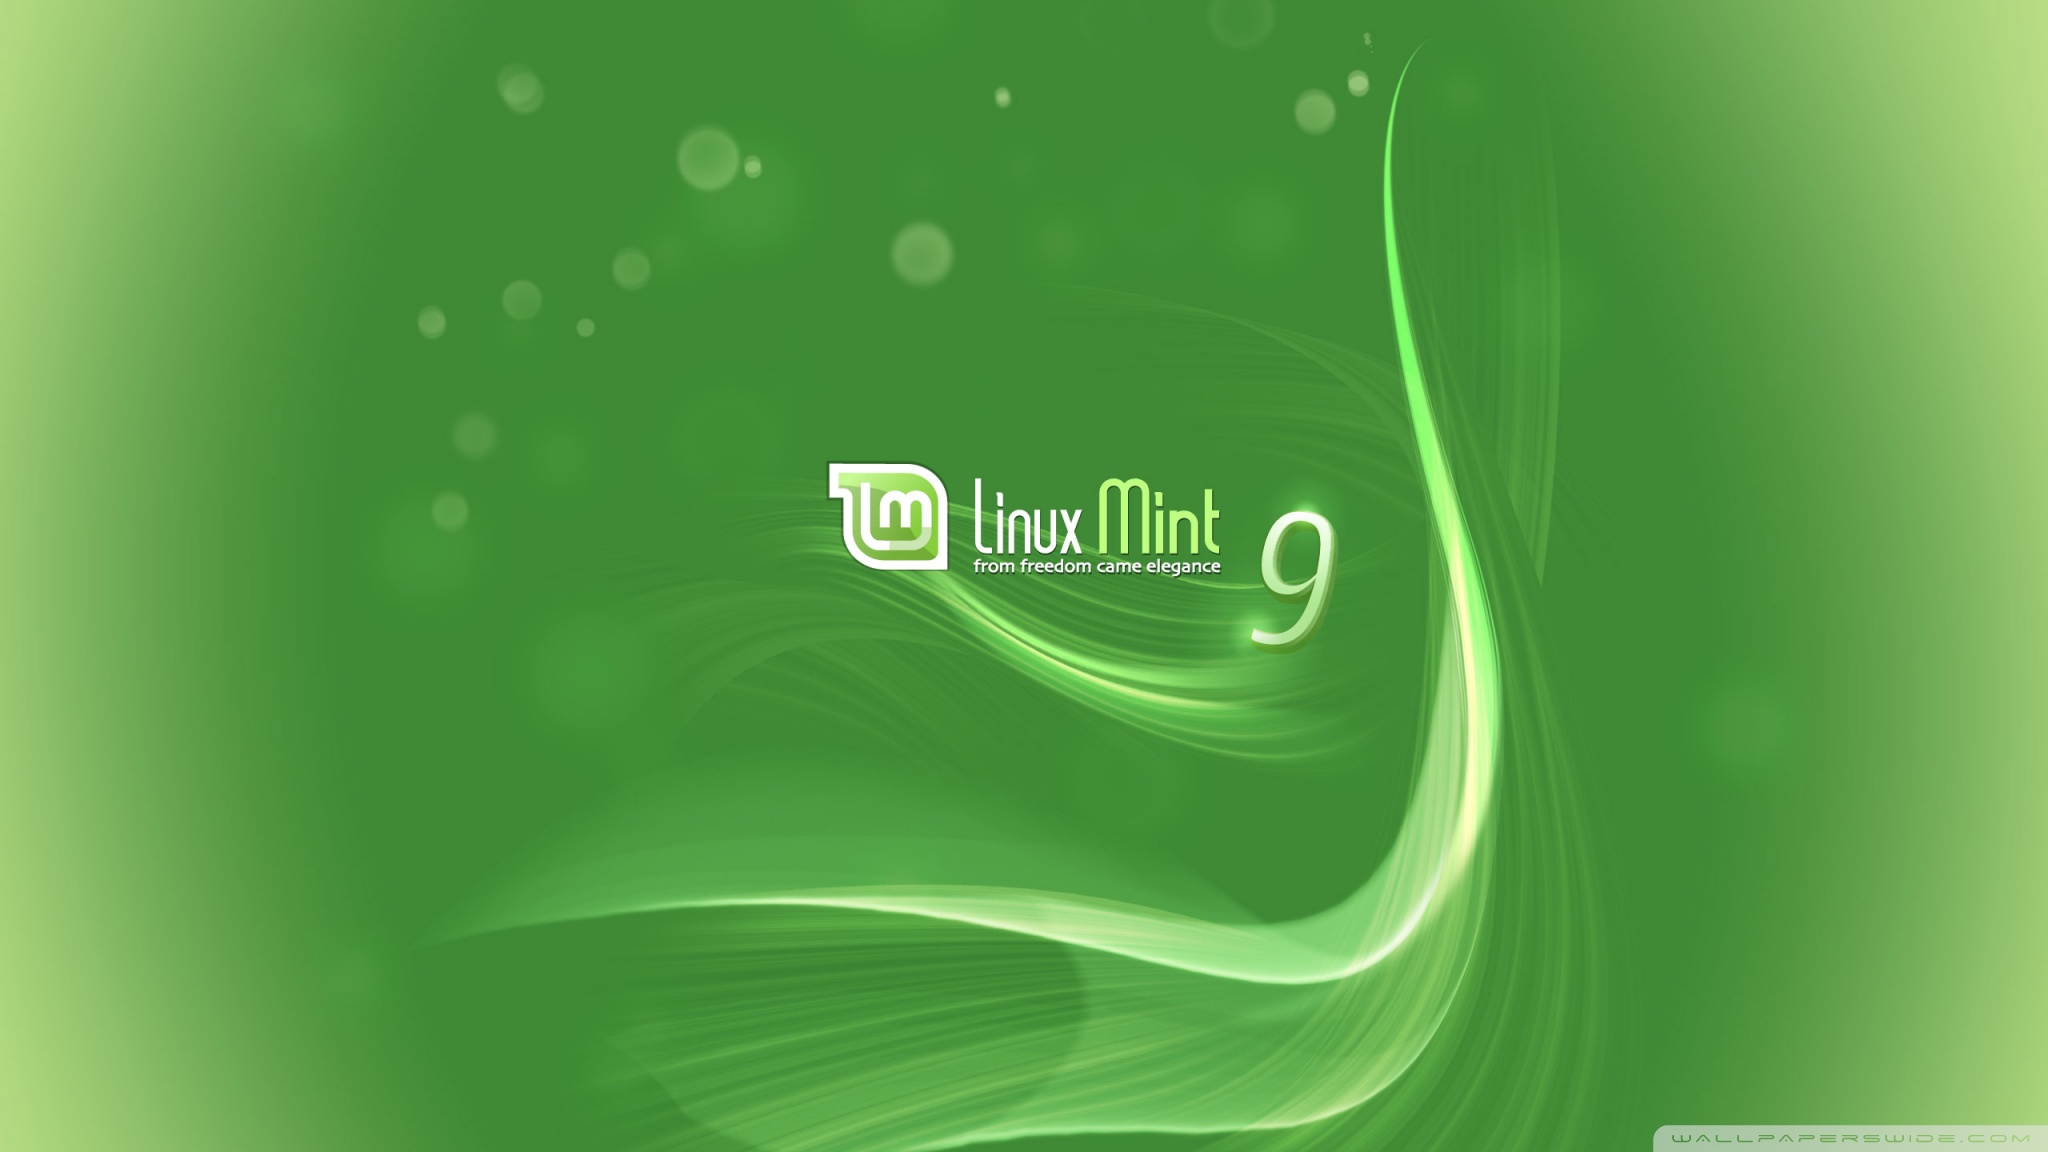 Linux Mint Ultra Hd Desktop Background Wallpaper For 4k Uhd Tv Tablet Smartphone